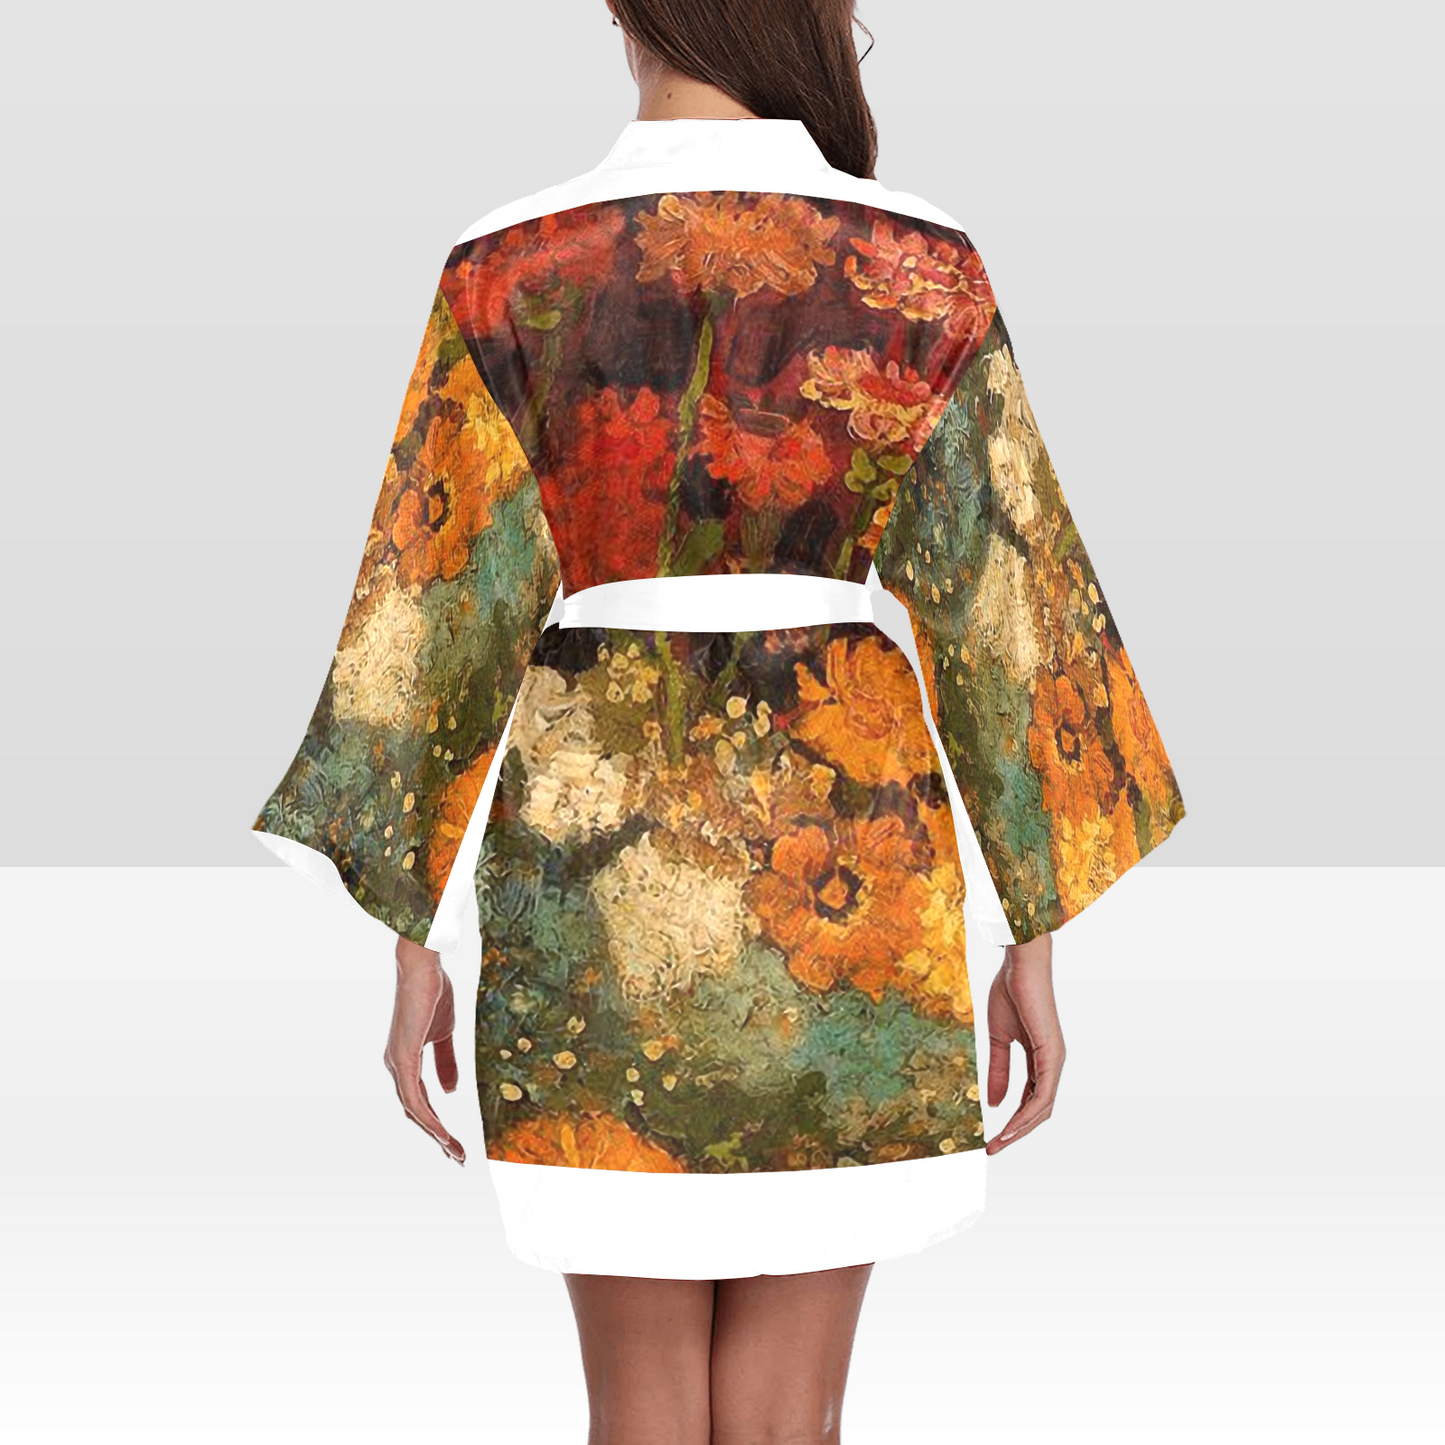 Vintage Floral Kimono Robe, Black or White Trim, Sizes XS to 2XL, Design 31